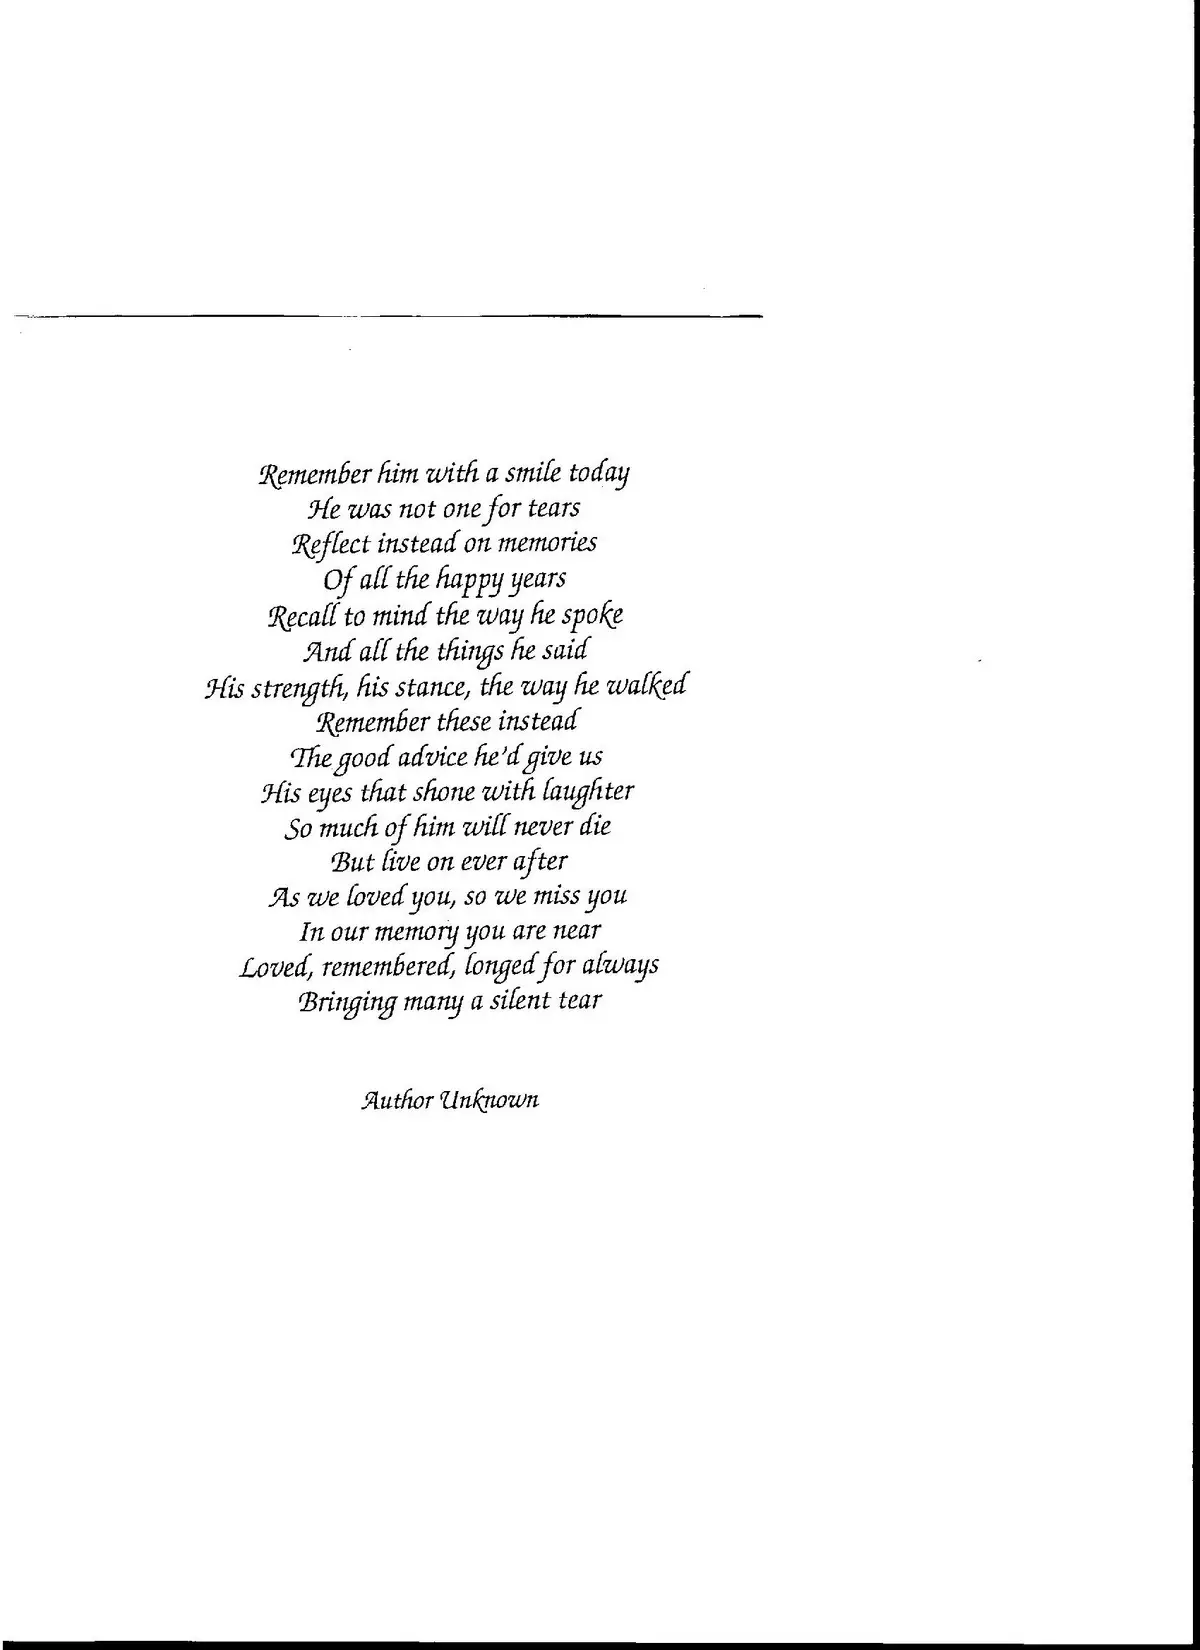 Short eulogy Poems